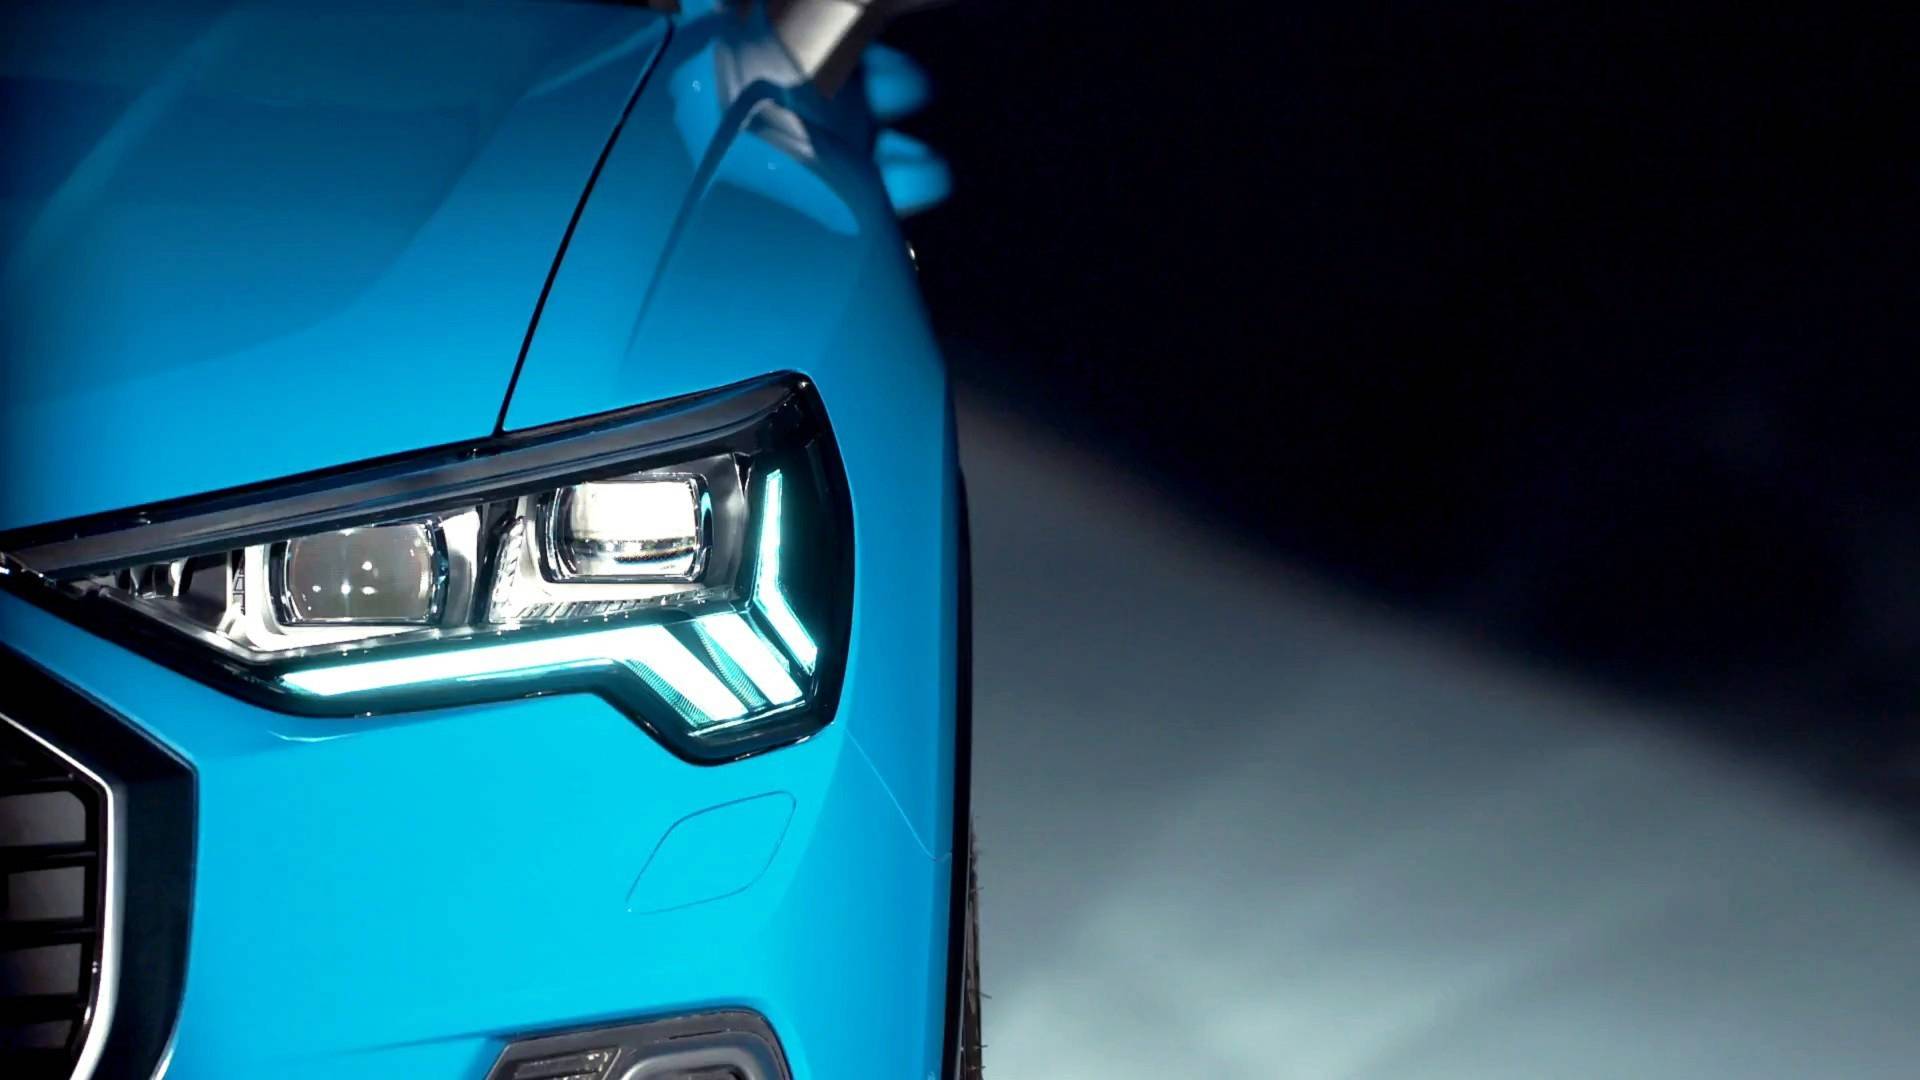 Audi Q3 Reveals Full LED Headlights In New Video Teaser